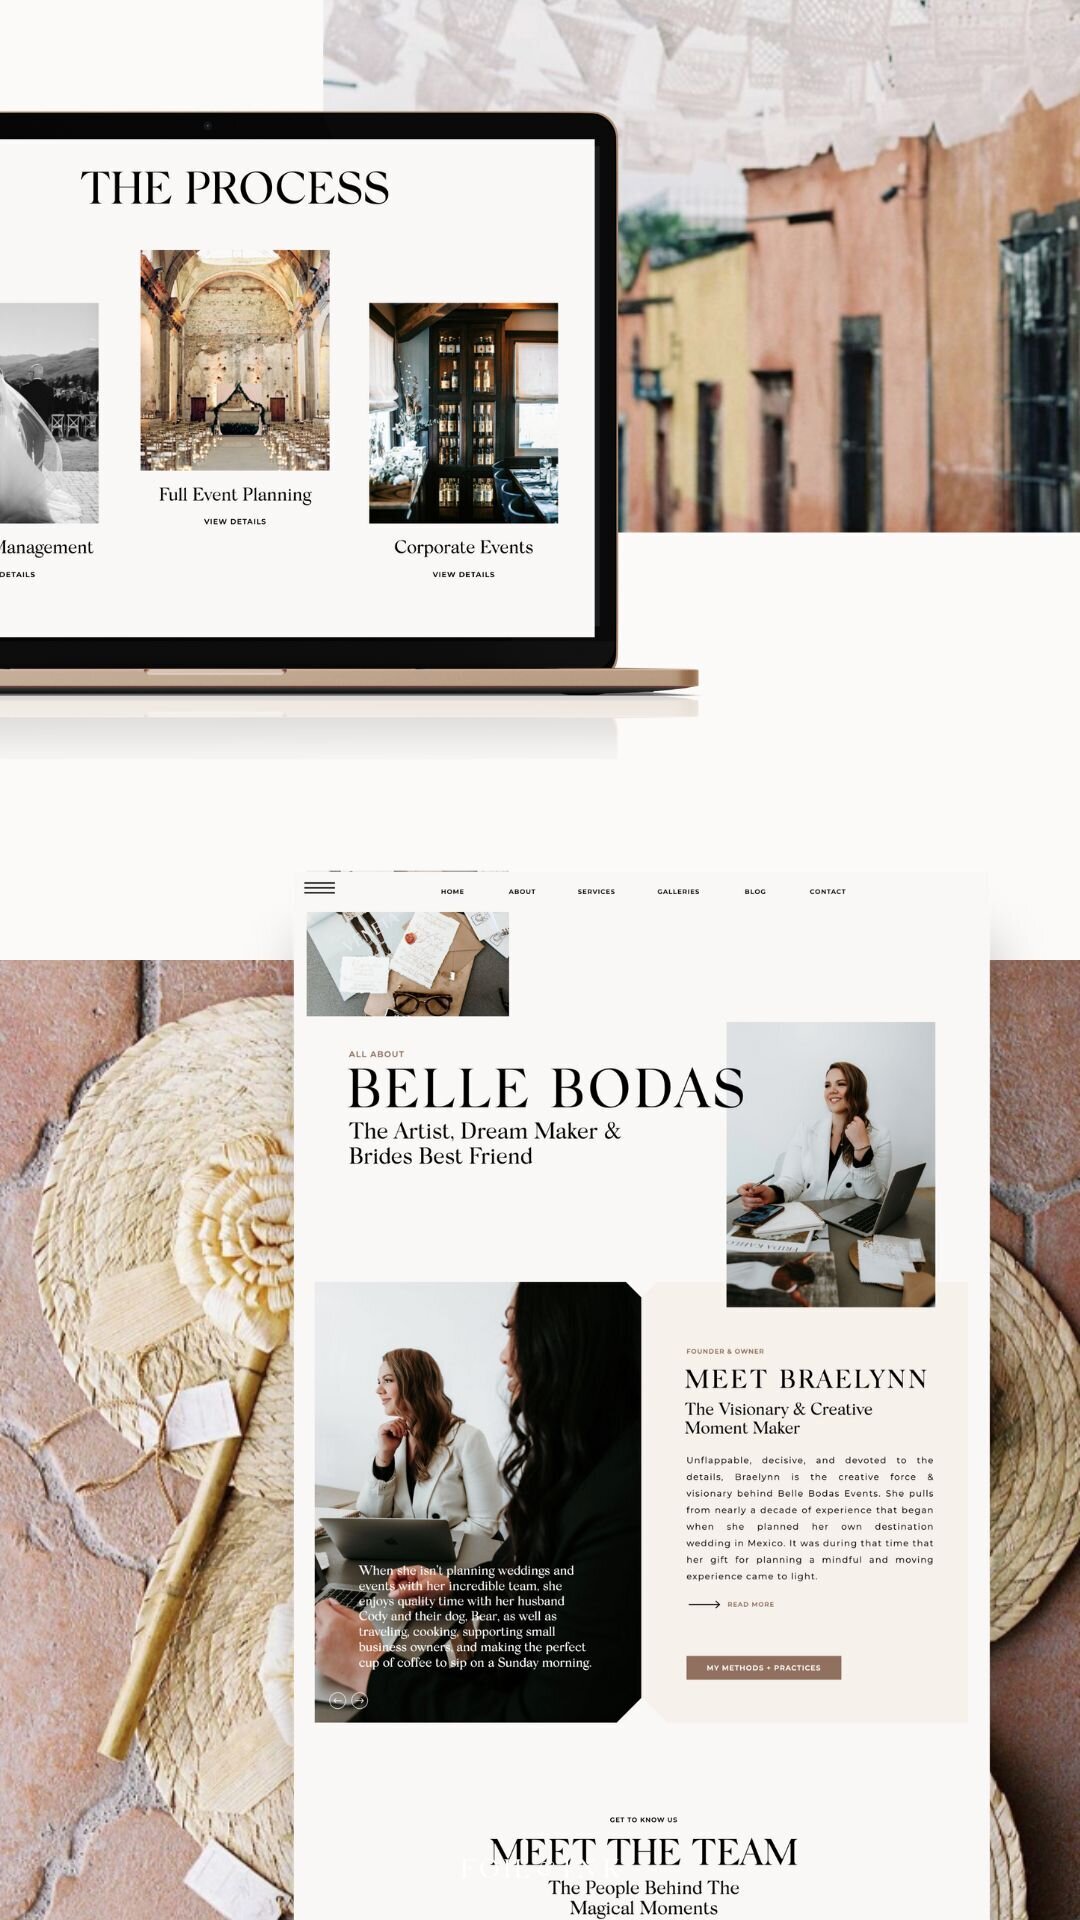 Foil & Ink branding & web design for Belle bodas events (5)